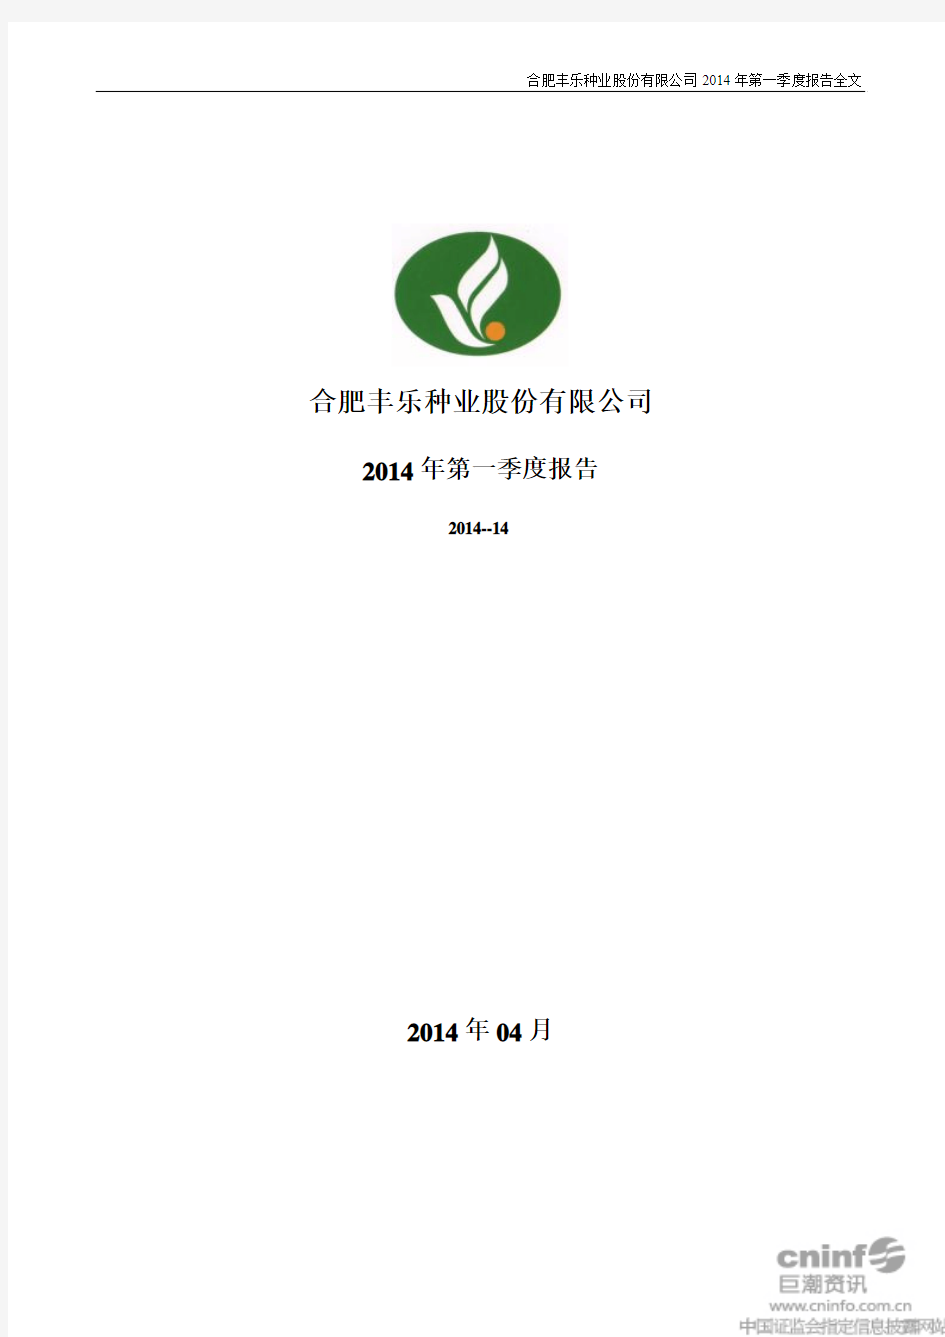 合肥丰乐种业股份有限公司2014年第一季度报告全文